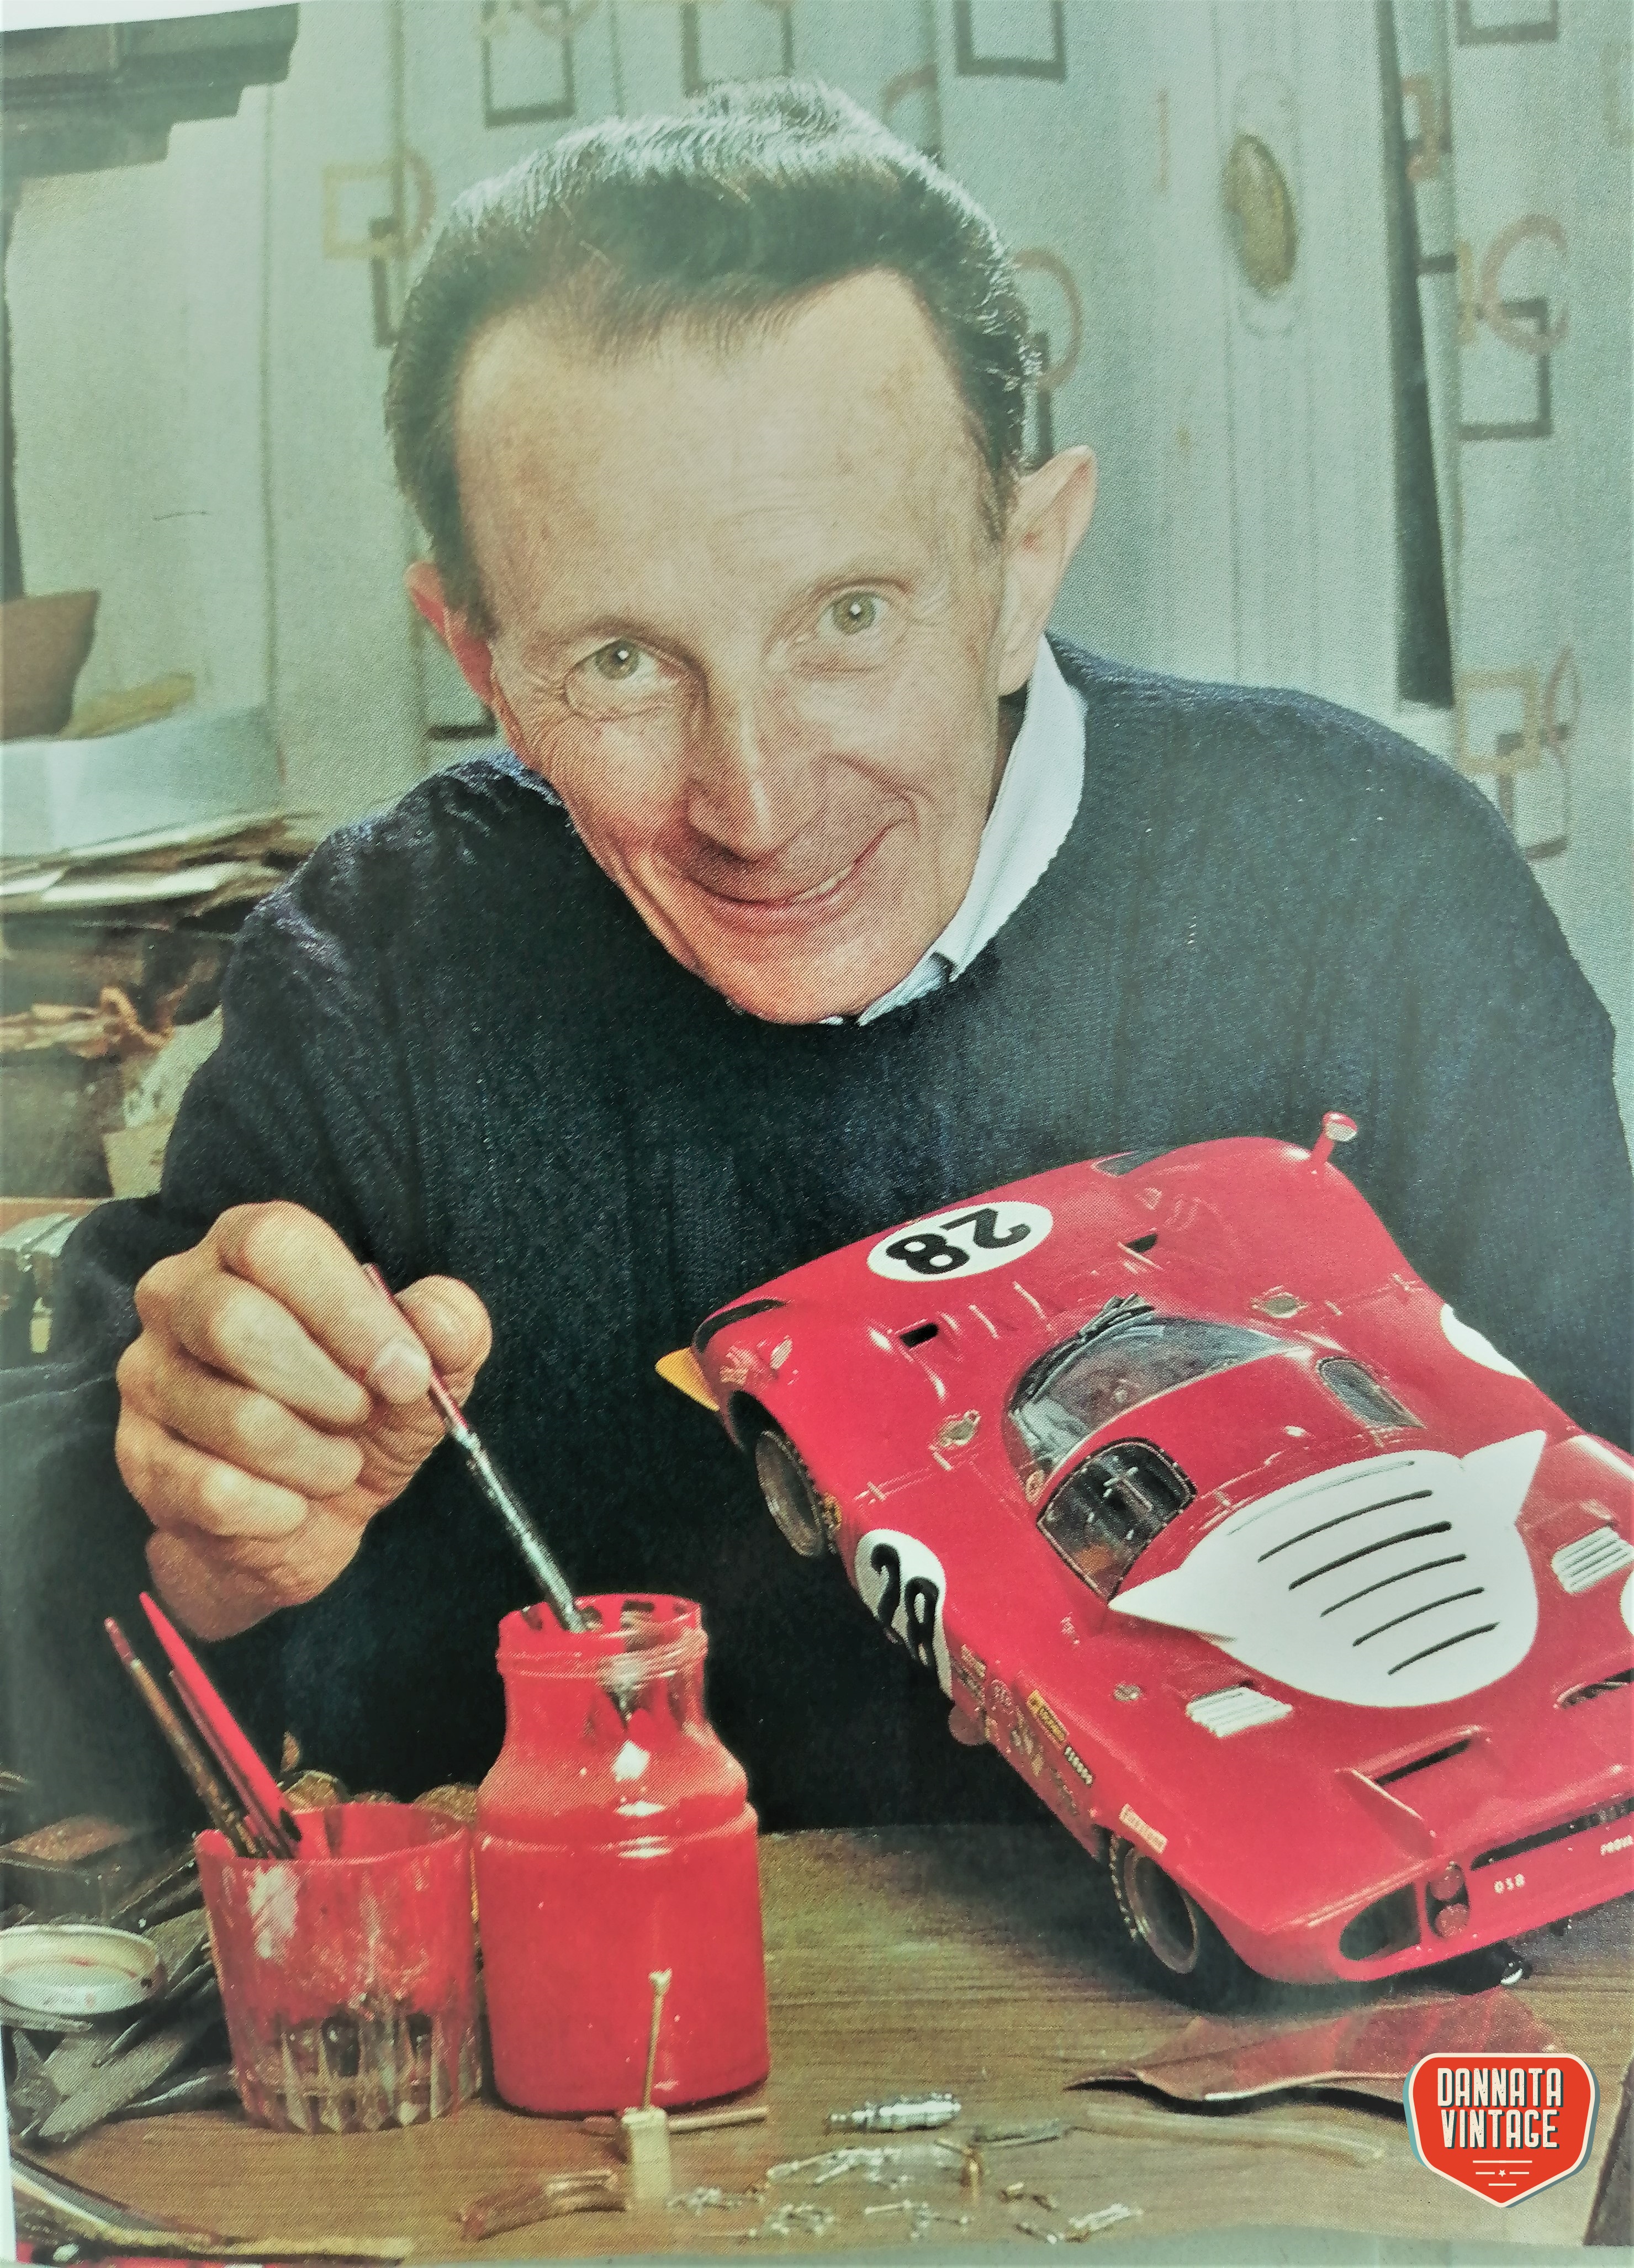 Michele Conti, un artigiano e le sue auto in scala